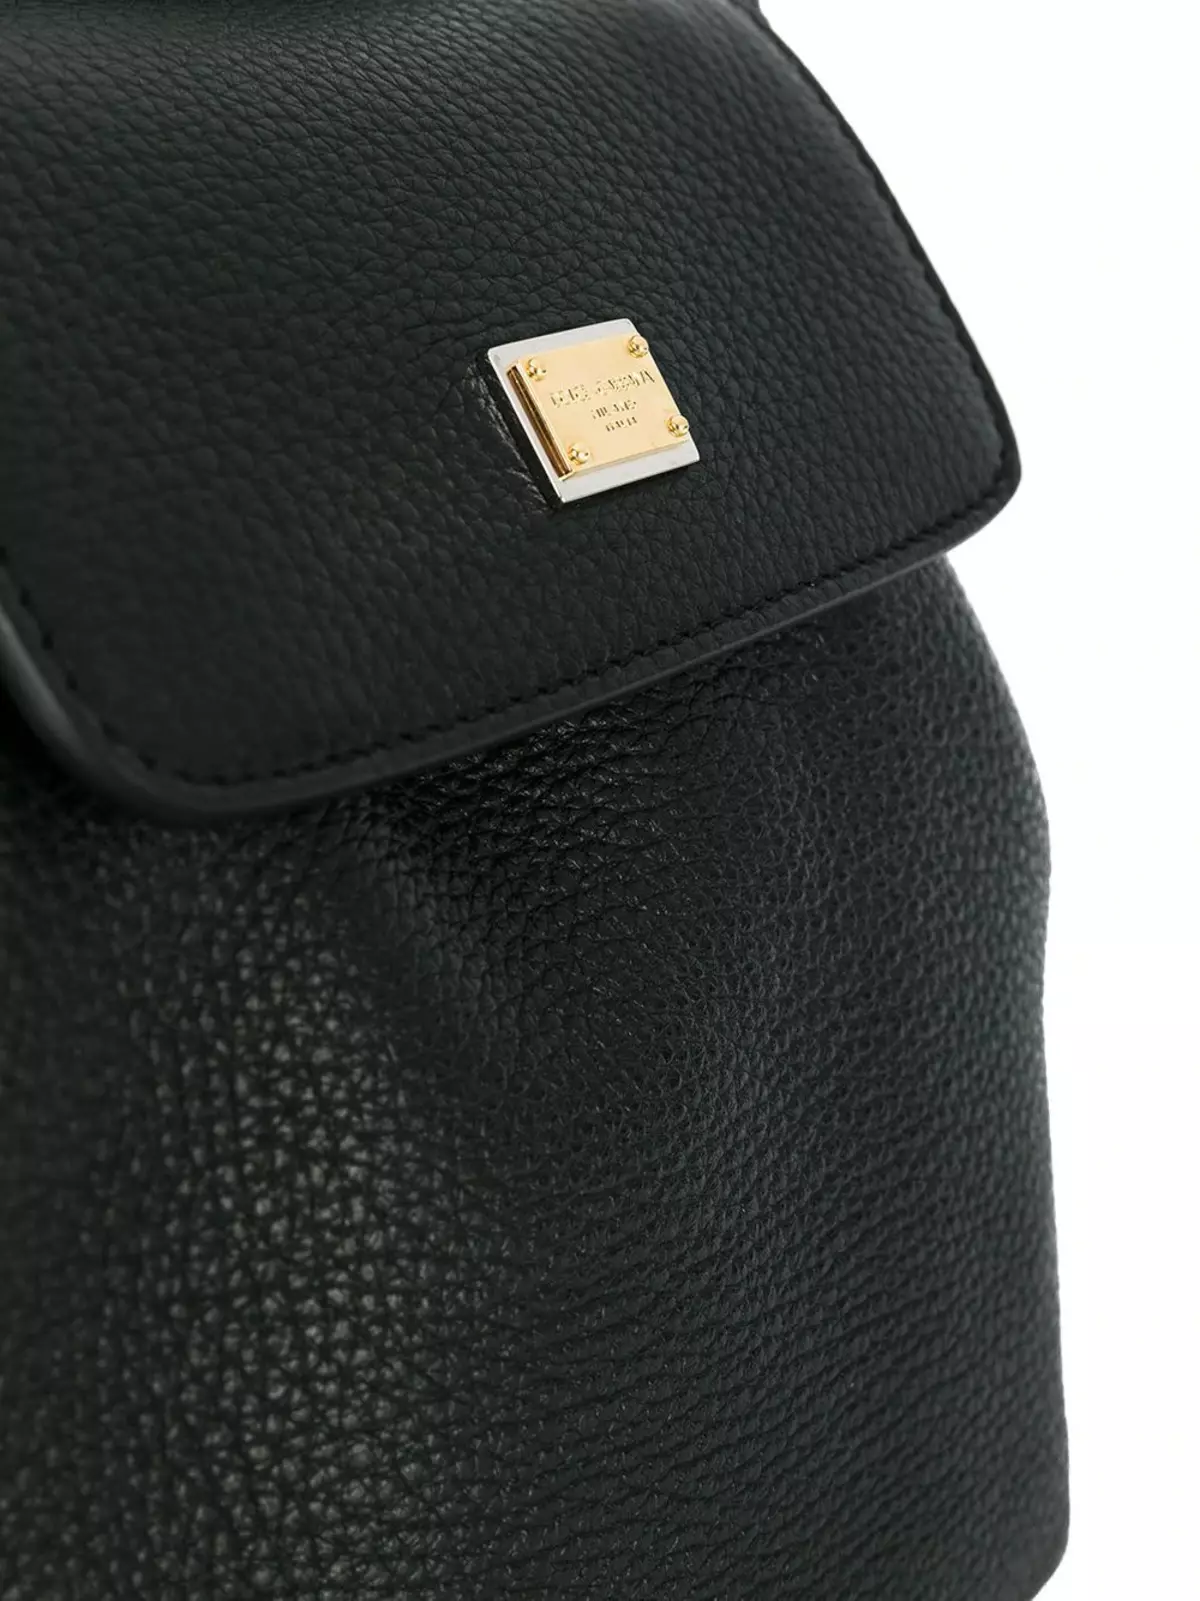 Dolce & Gabbana seljakotid: Naine ja meeste, must ja punane, nahast seljakottide kotid ja muud mudelid. Kuidas eristada originaali koopiast? 2559_21